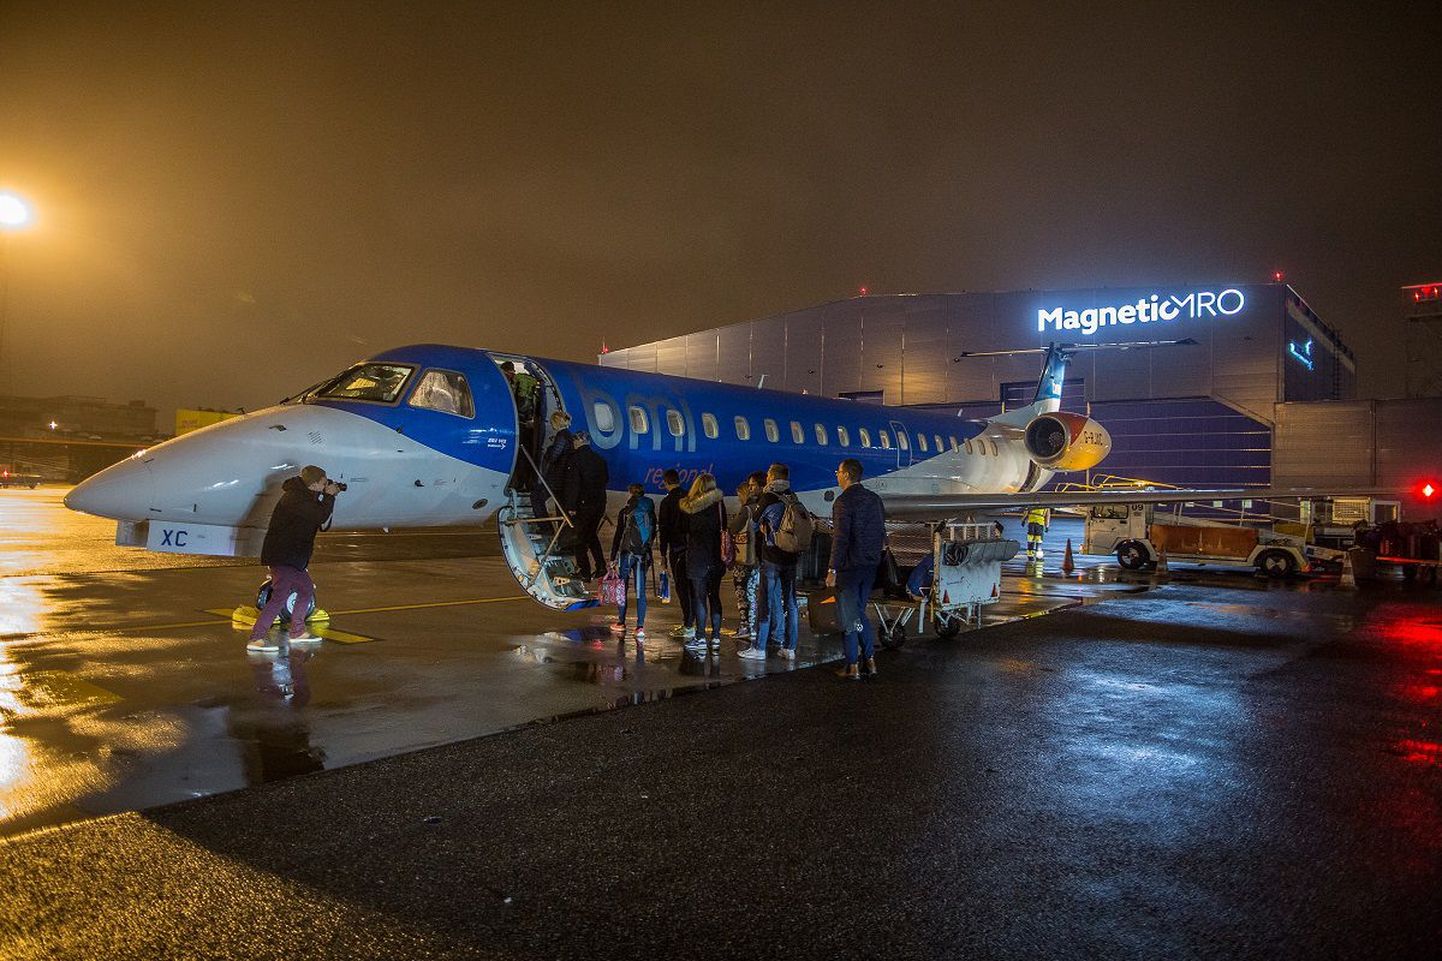 Esimene Nordic Aviationi lend väljus varahommikul Amsterdami.